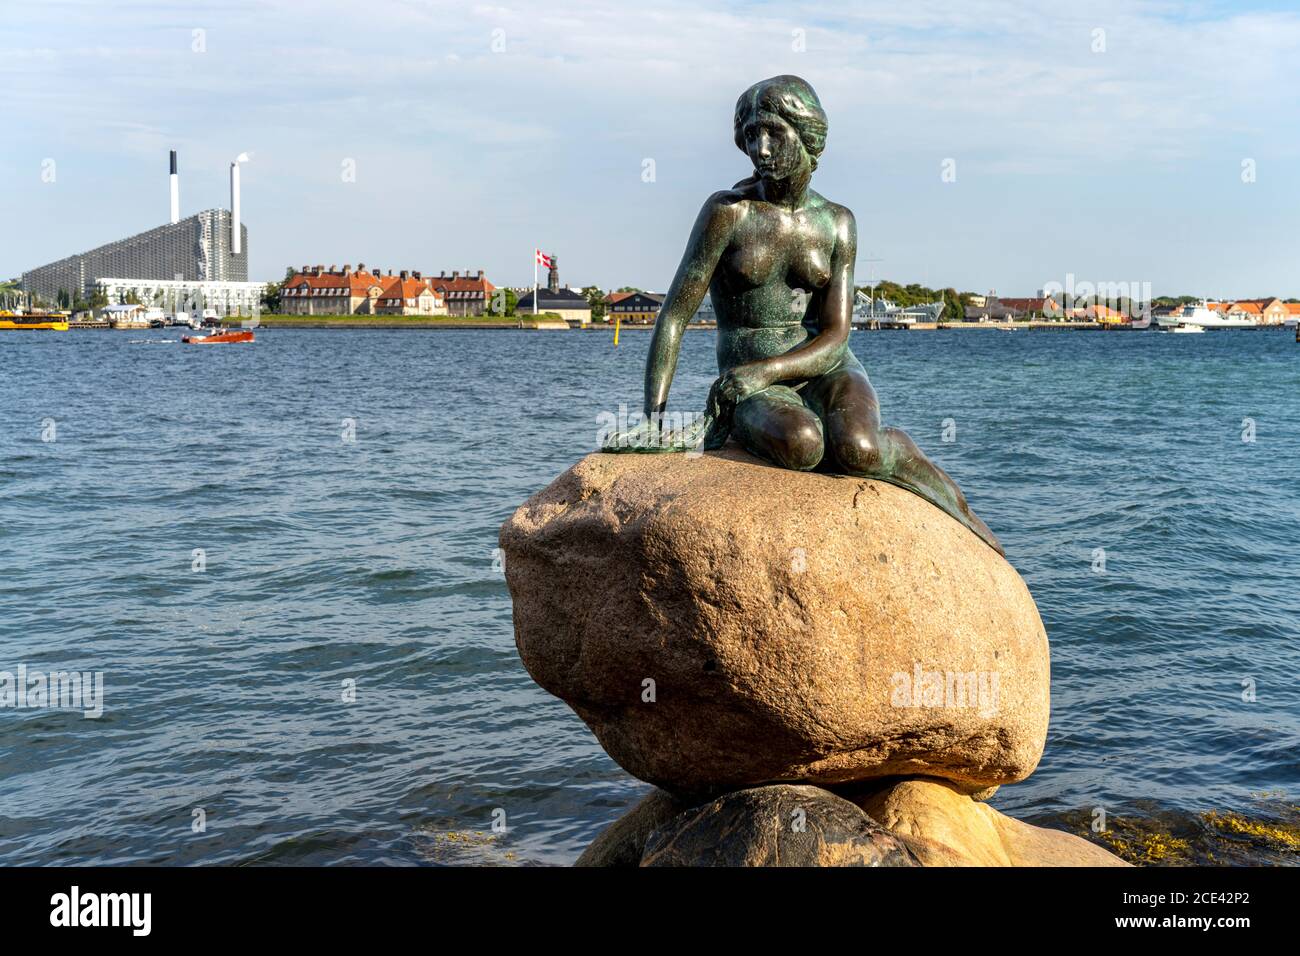 Die berühmte Bronzefigur Die Kleine Meerjungfrau - Den Lille Havfrue - an der Uferpromenade Langelinie, Kodenhagen, Dänemark, Europa | el famoso br Foto de stock